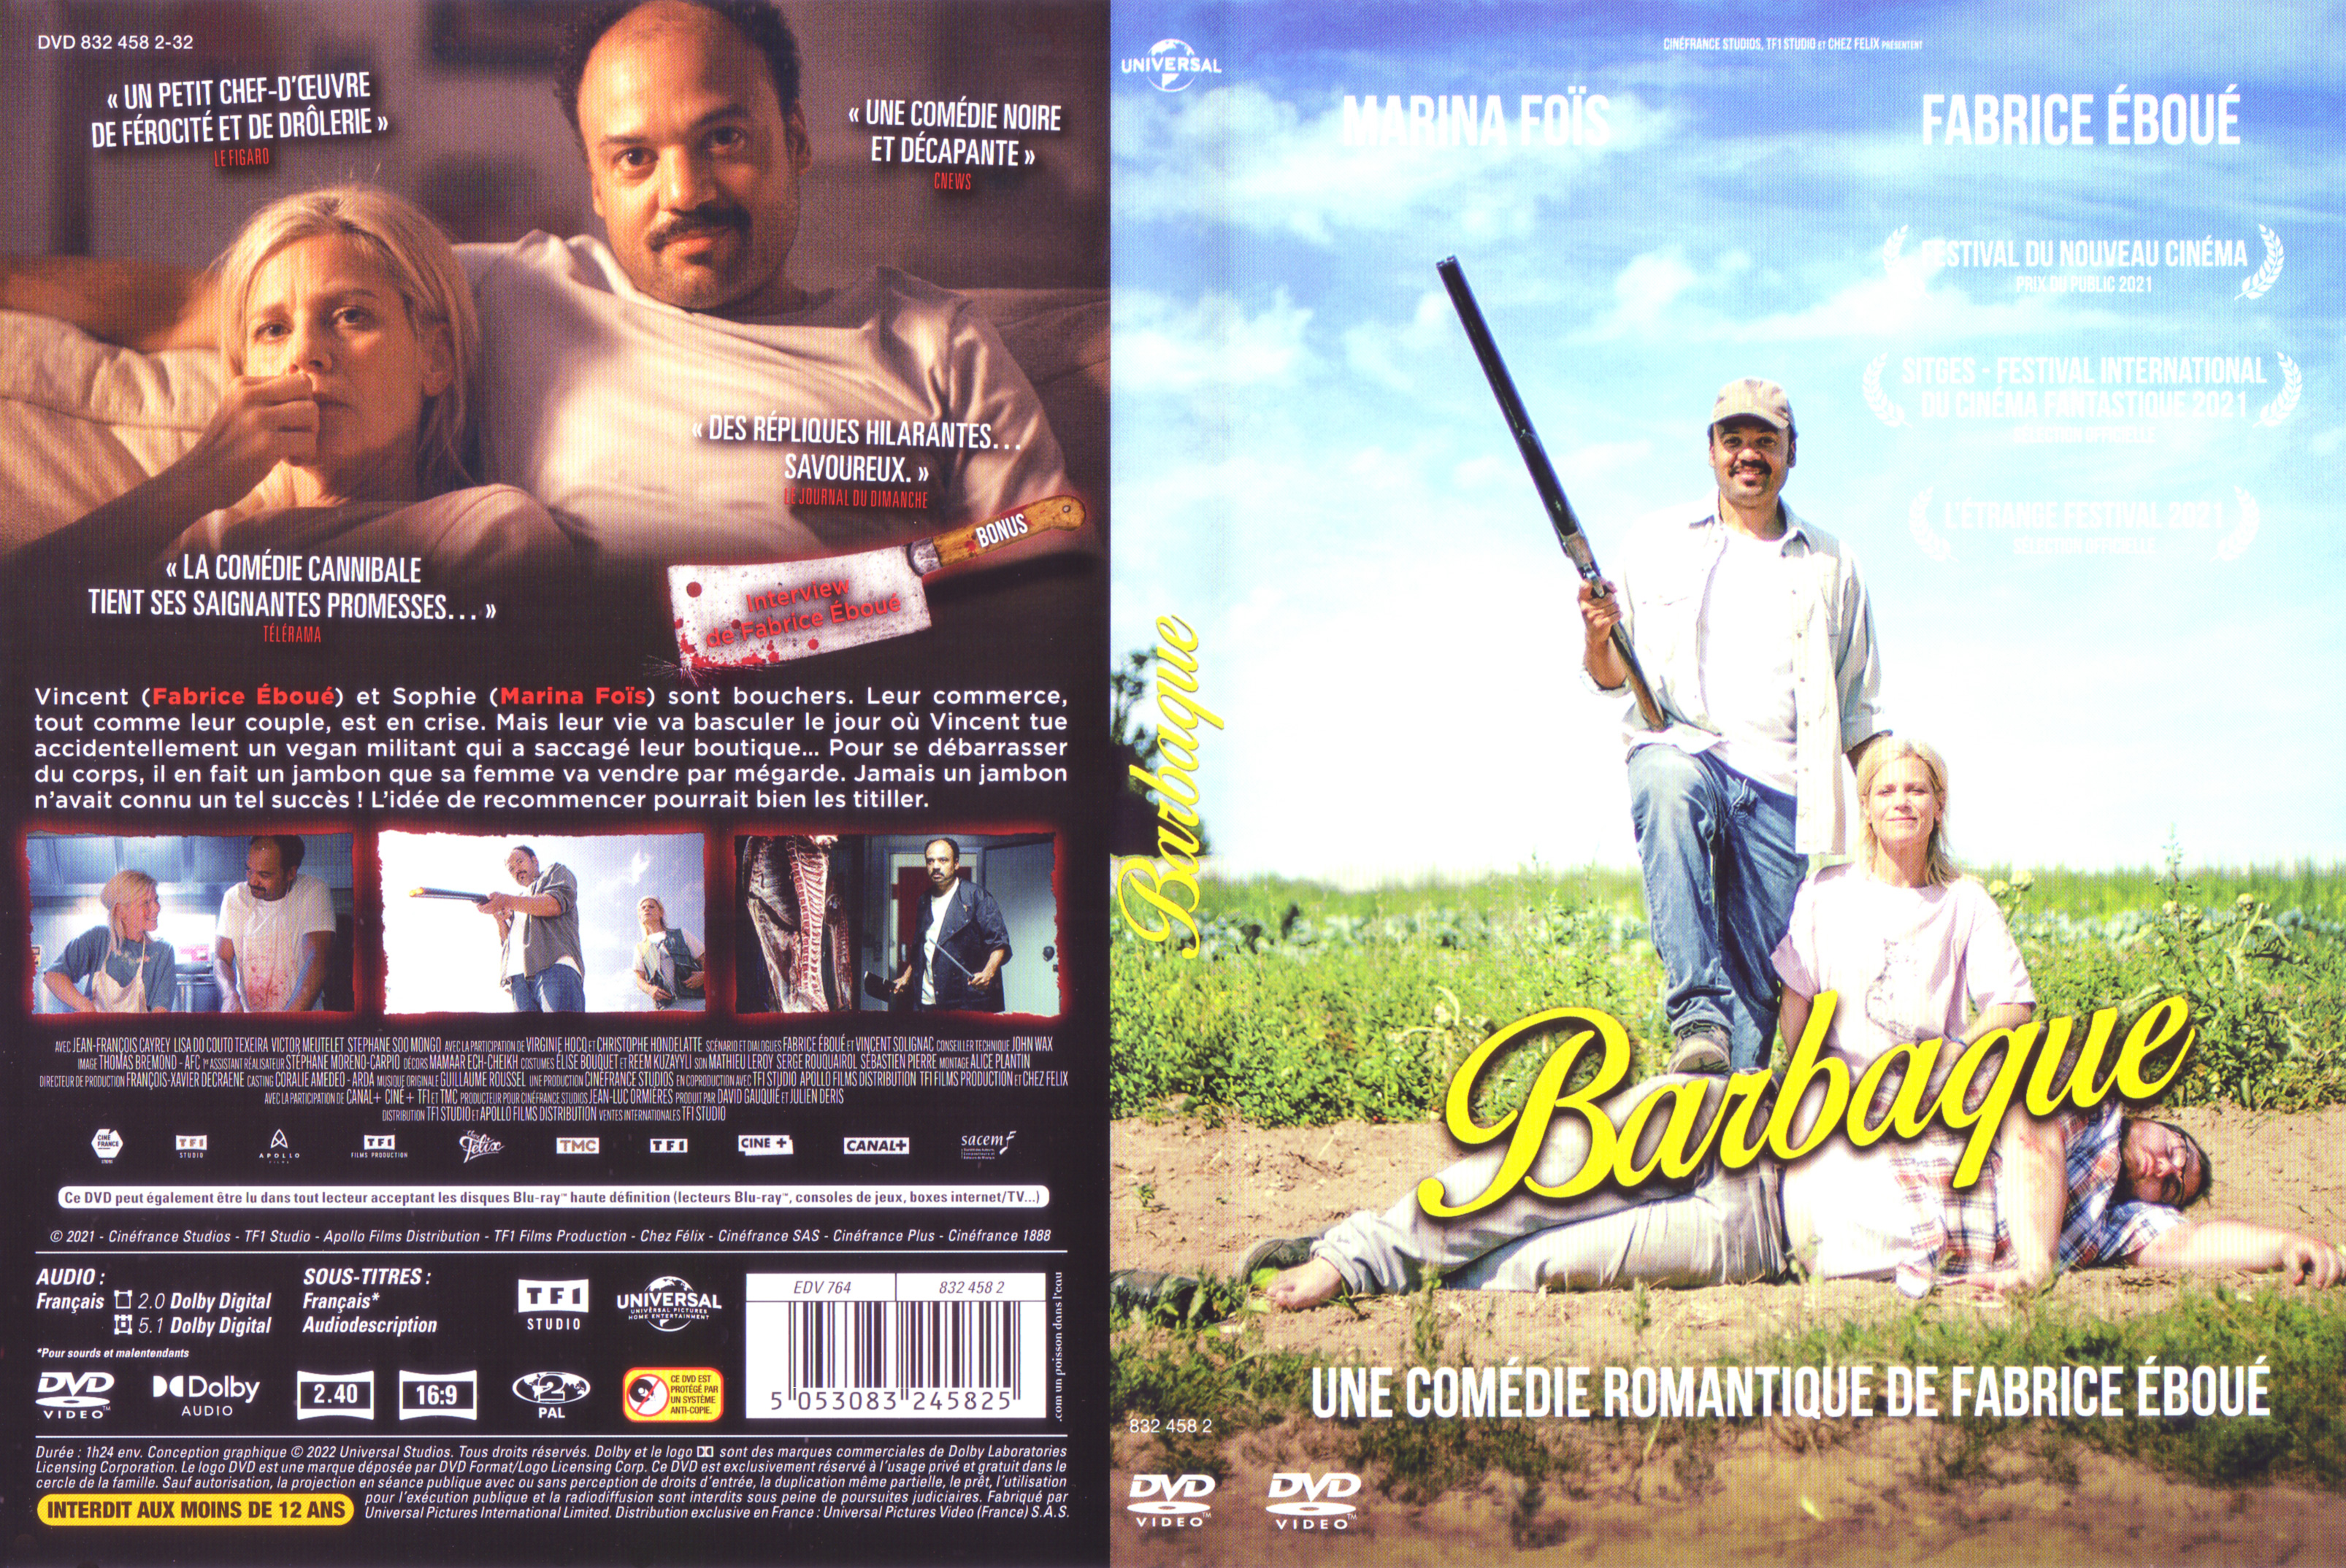 Jaquette DVD Barbaque